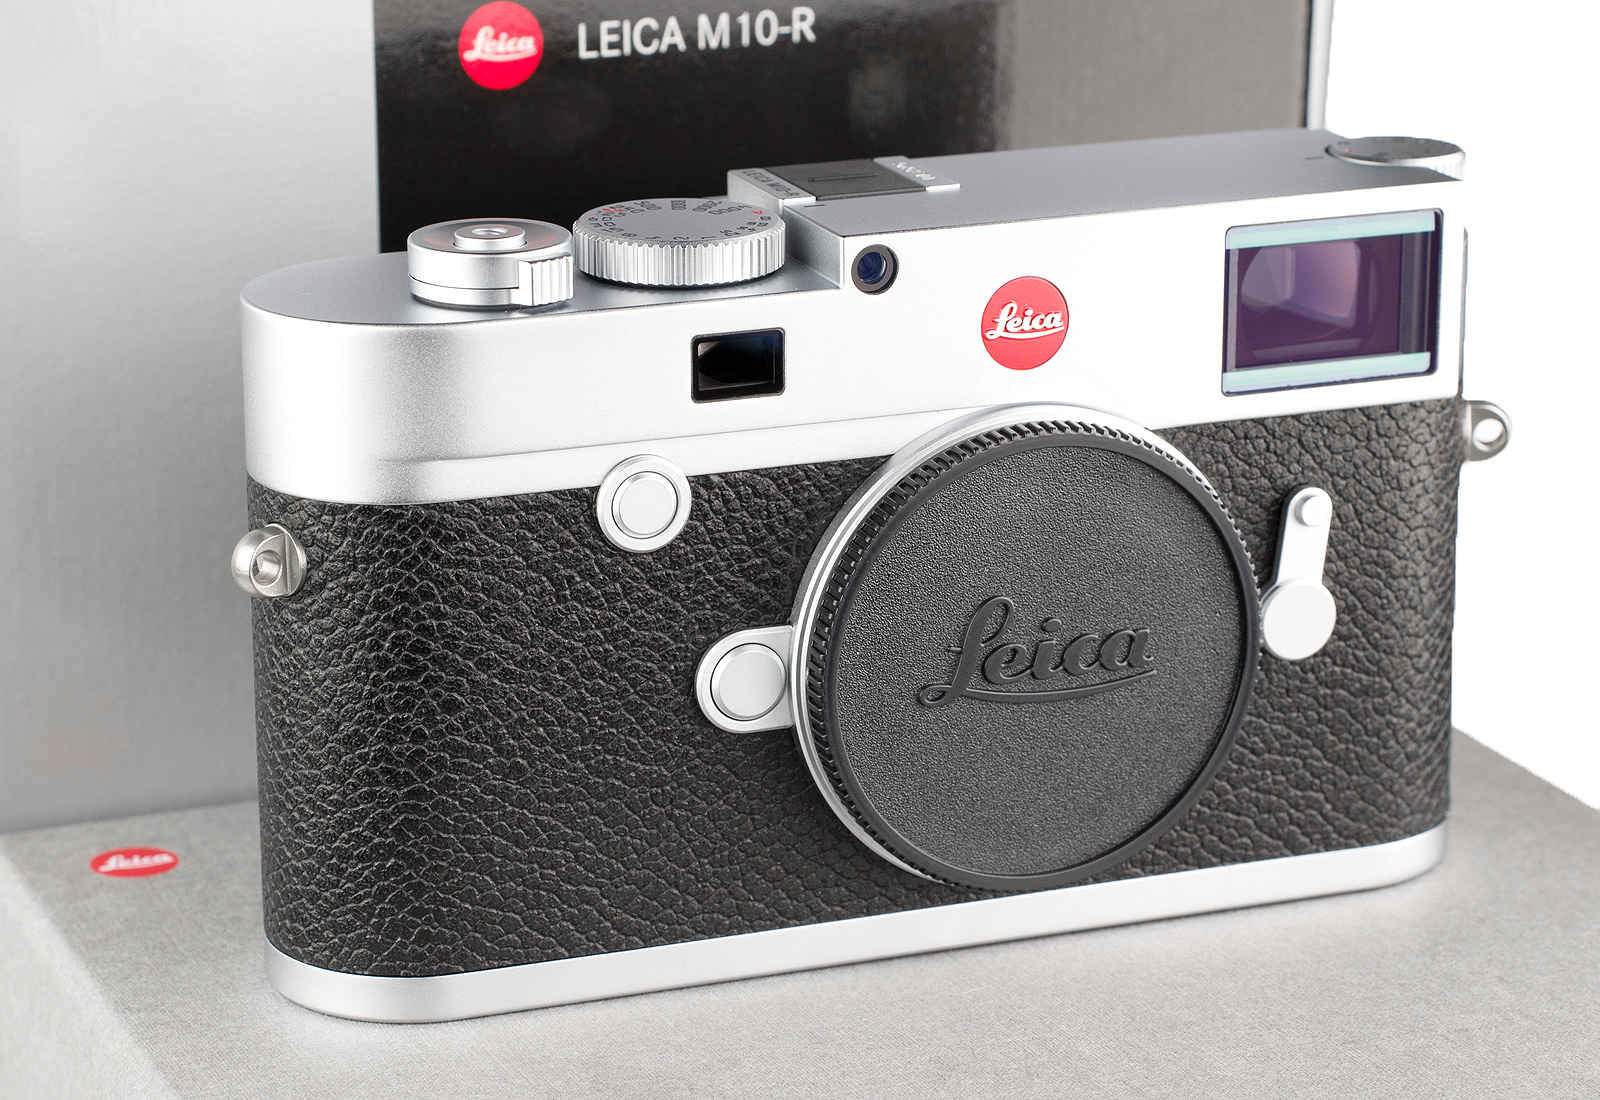 Leica M10-R, silbern verchromt 20003